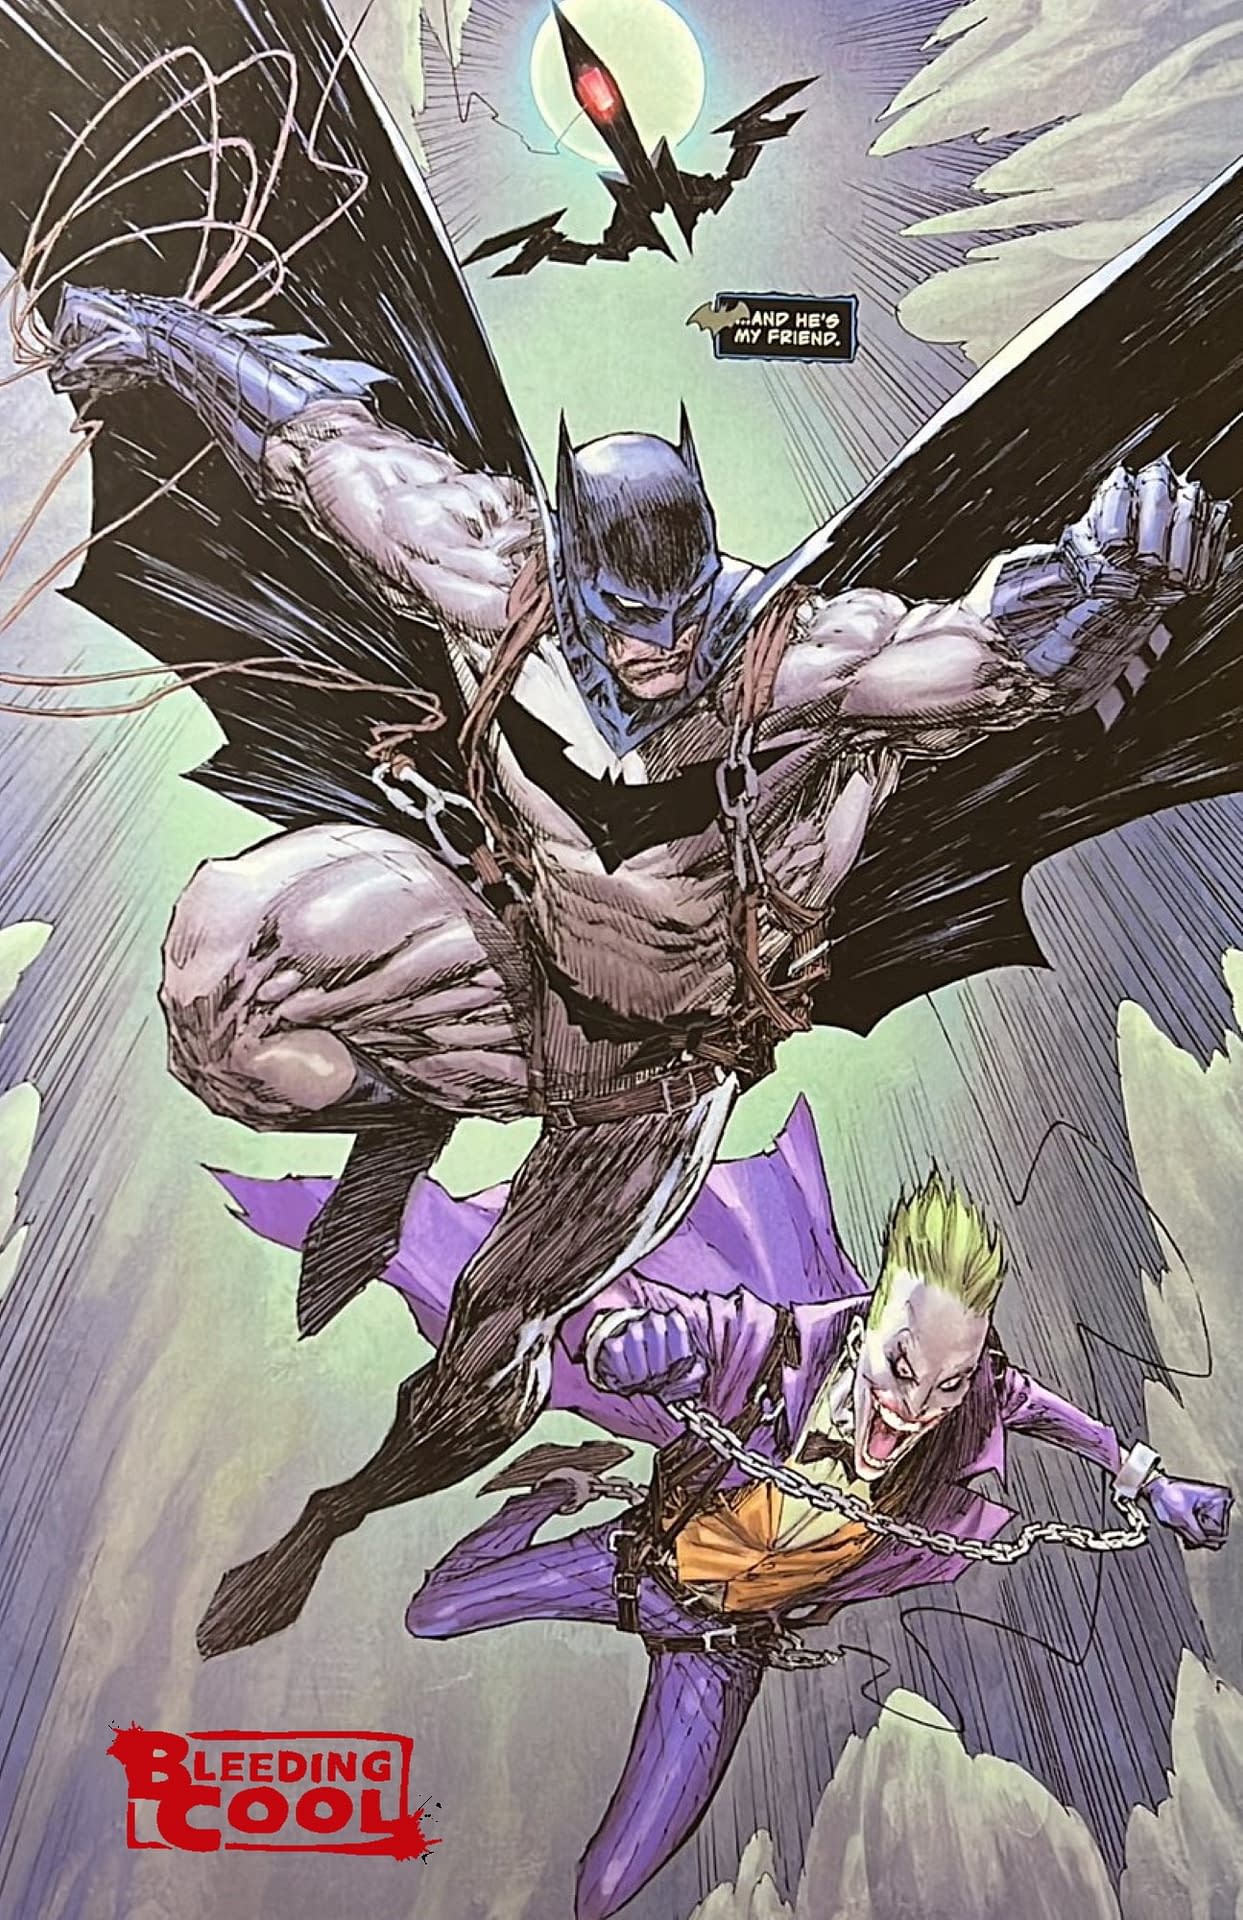 Will Fox News Call DC Woke Over The Joker Being Batman's Friend?